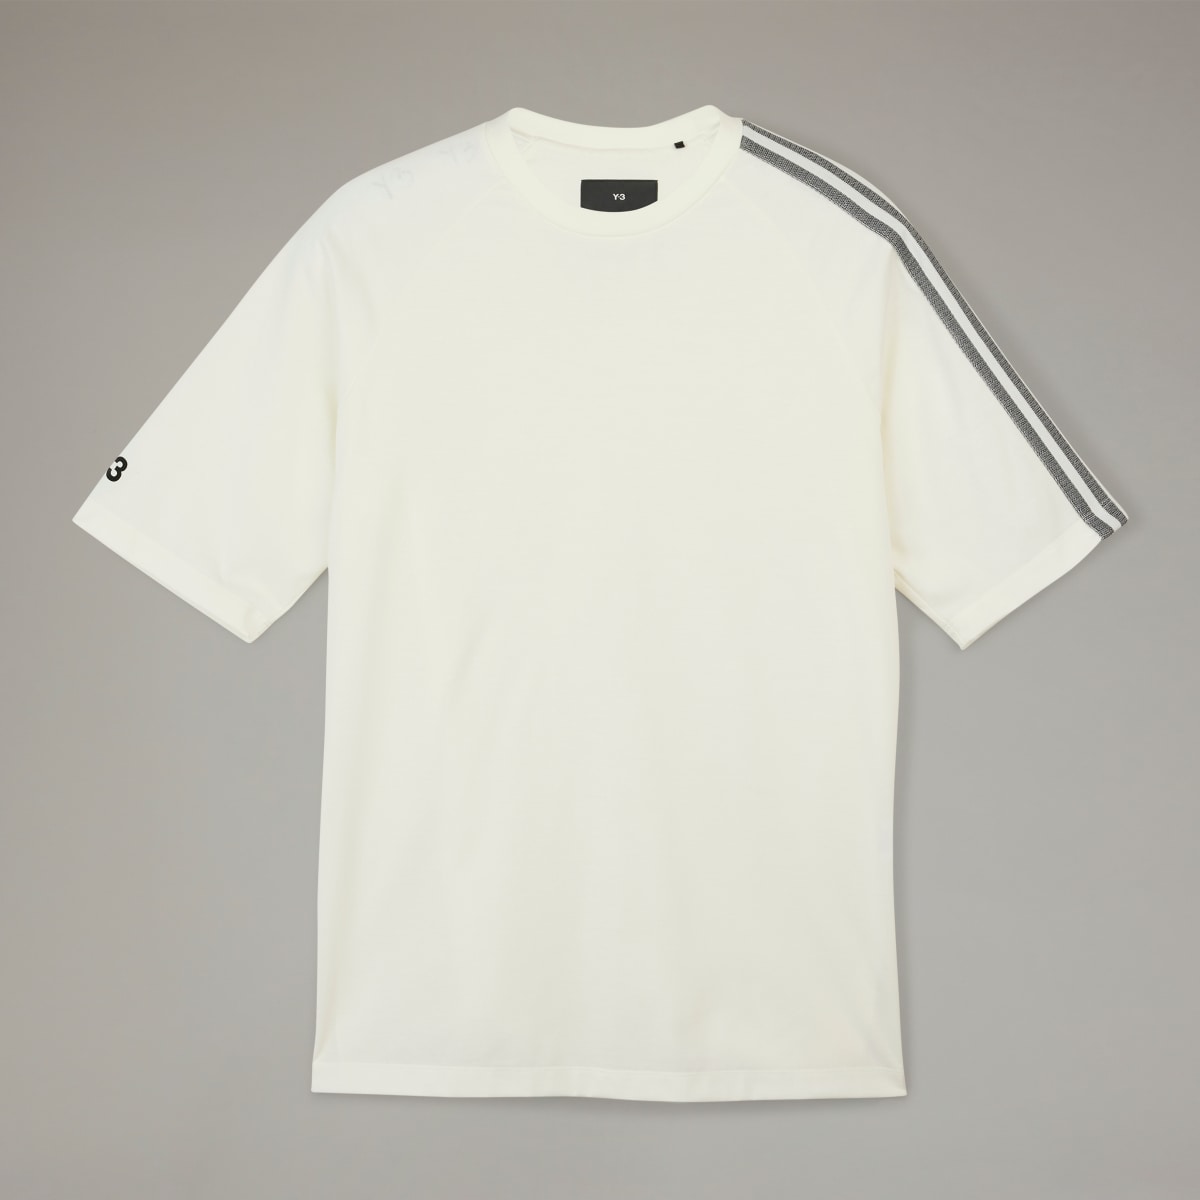 Adidas Y-3 3-Stripes T-Shirt. 5